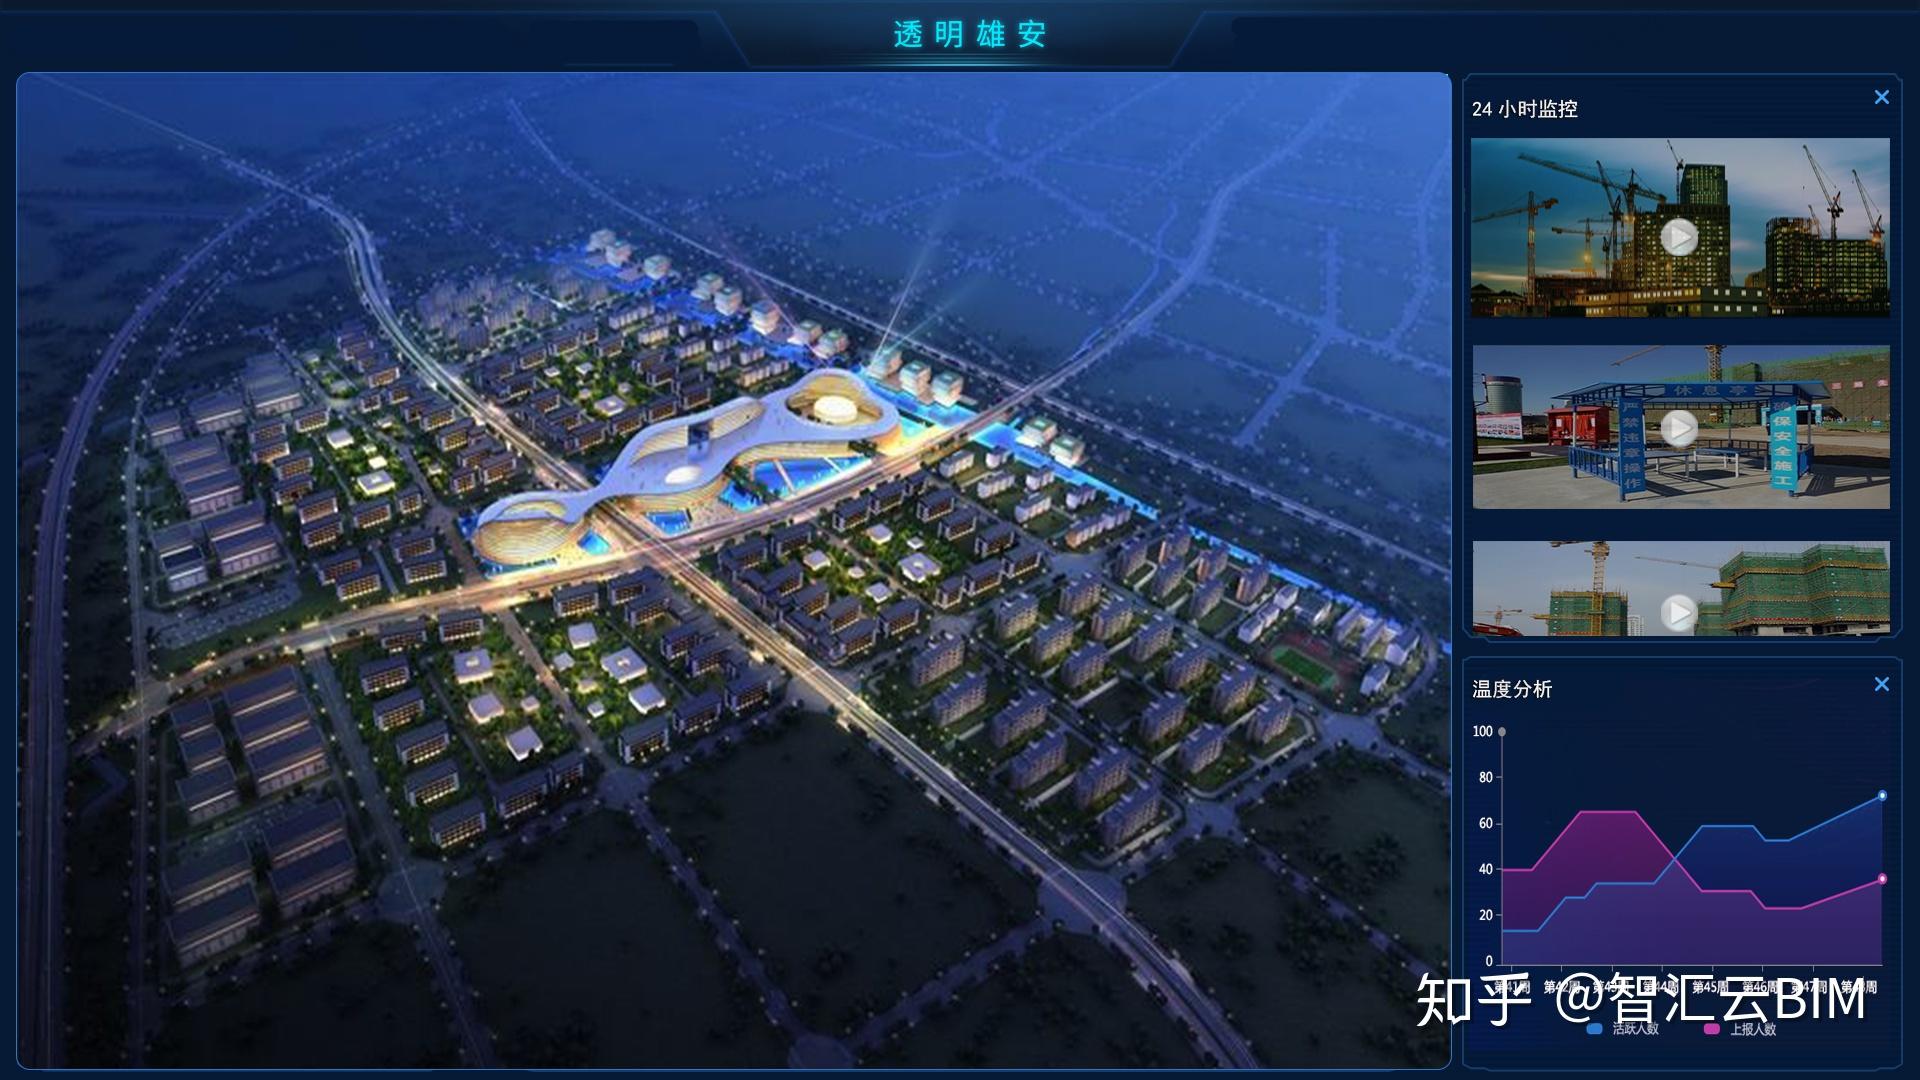 河北雄安新区起步区控制性规划-中国城市规划设计研究院(中规院) - 我的建筑 myArch.cn